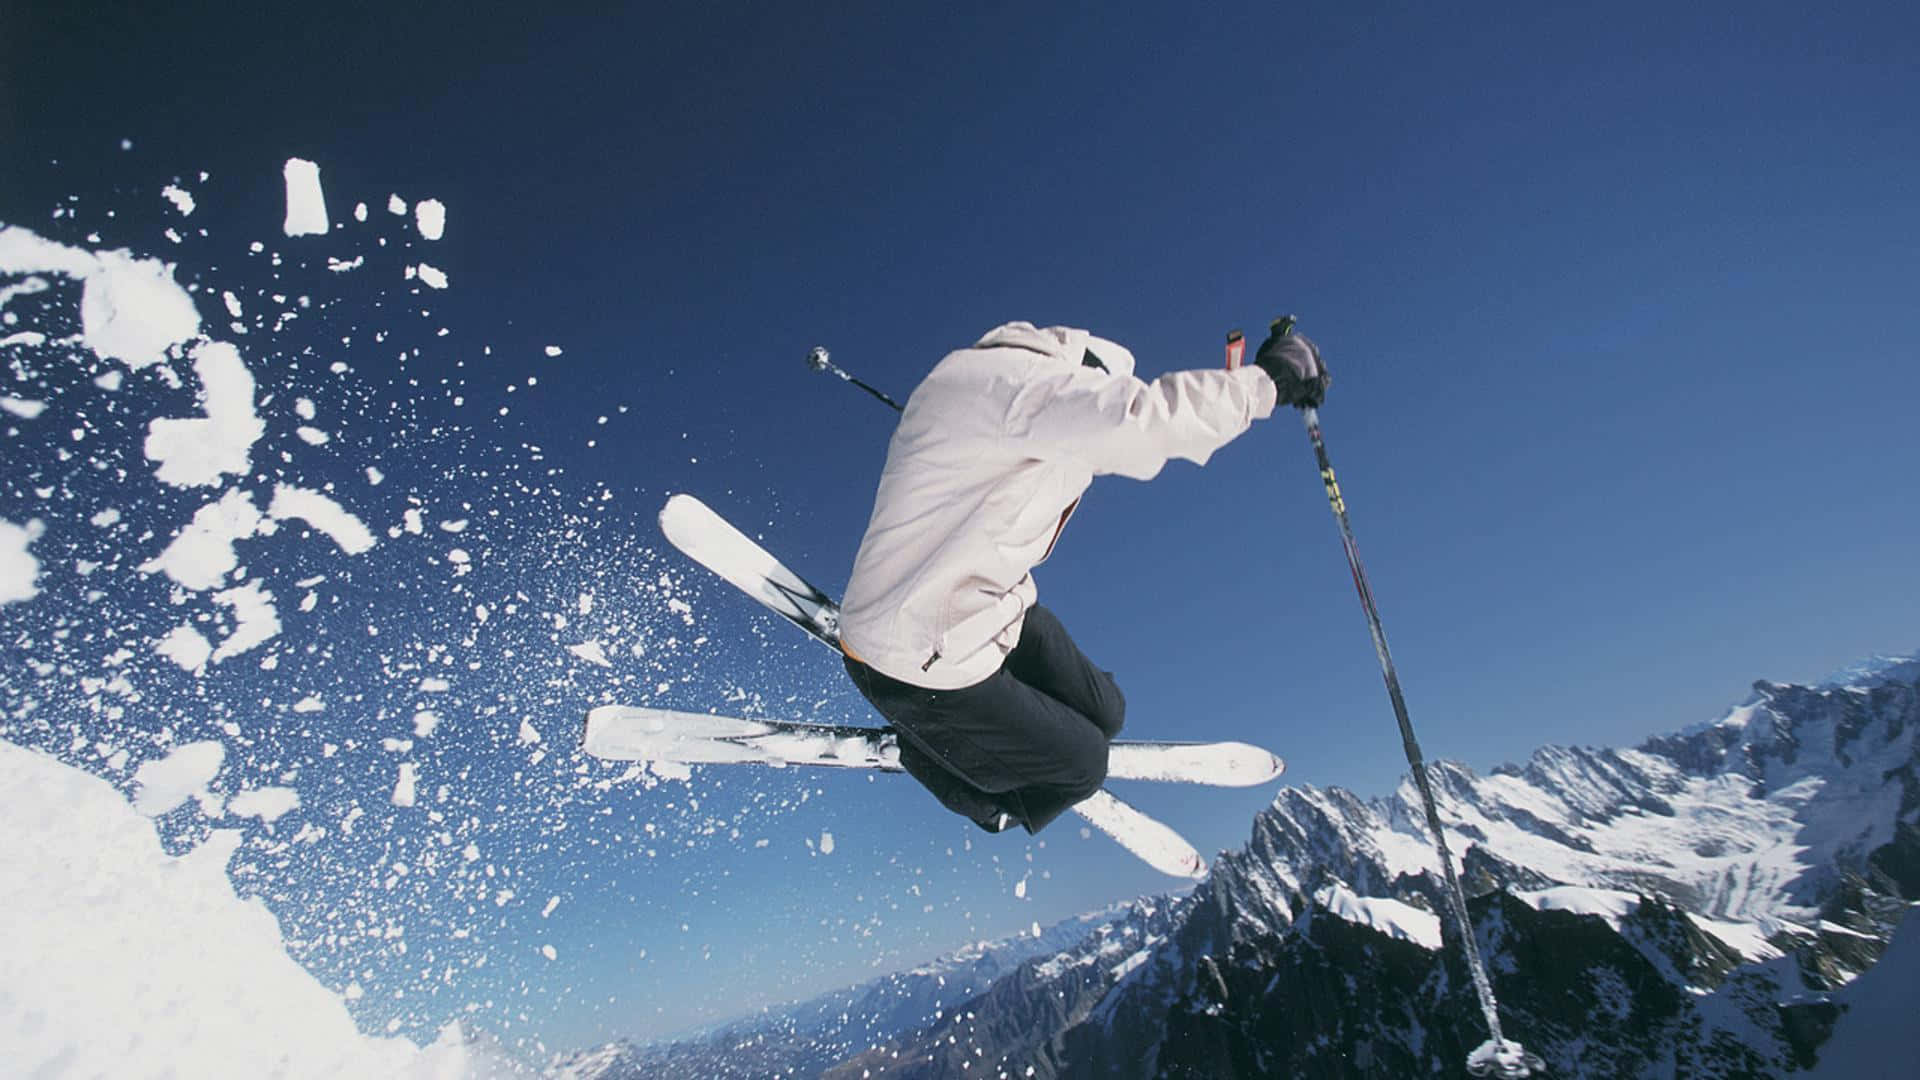 Gönnensie Sich Eine Pause Von Den Belastungen Des Alltags Und Genießen Sie Einen Tag Auf Dem Ski-berg. Wallpaper